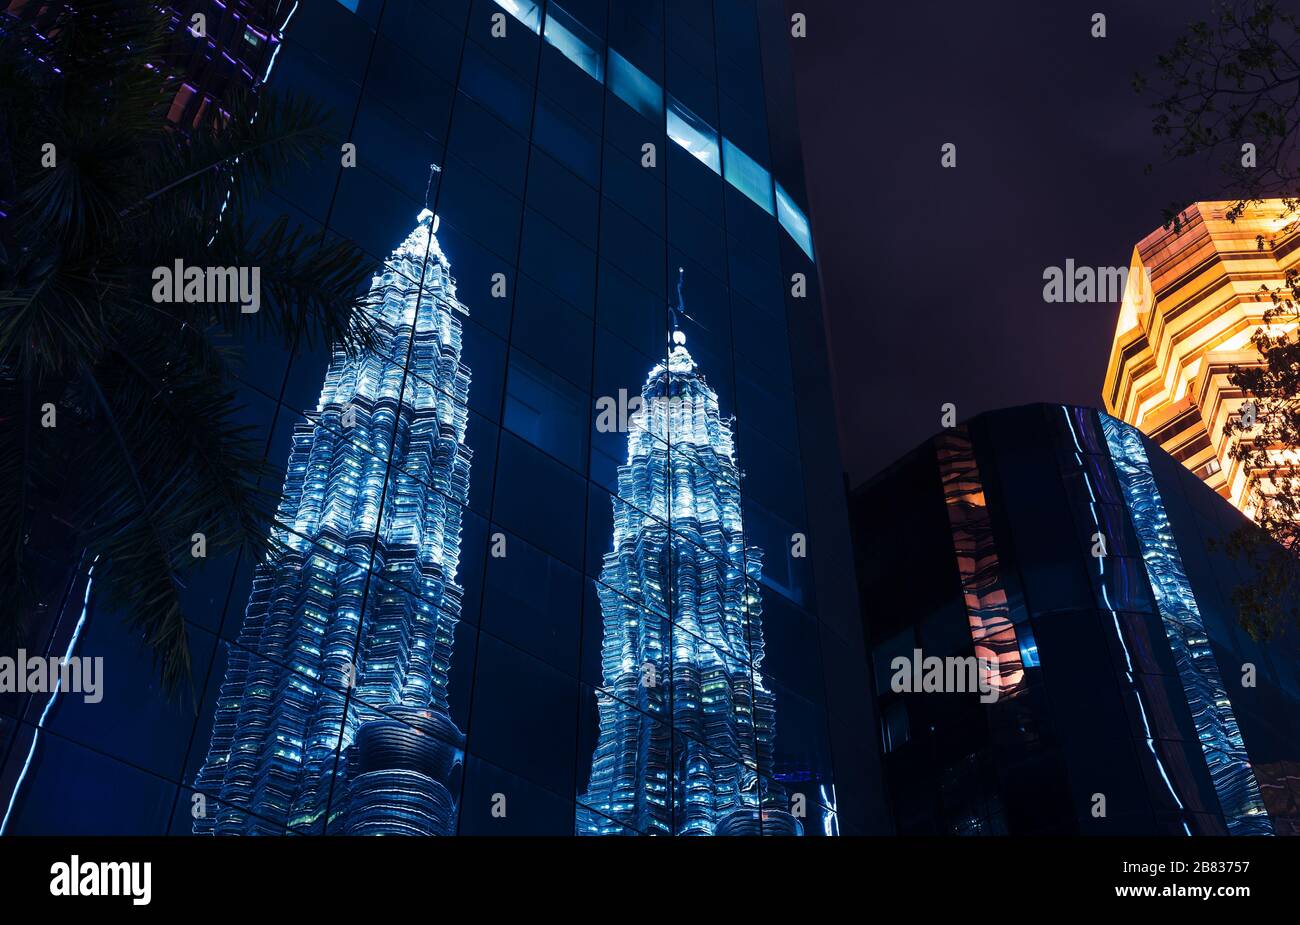 Kuala Lumpur, Malaisie - 28 novembre 2019 : vue nocturne du centre-ville avec reflet des tours jumelles Petronas dans un mur de verre bleu Banque D'Images